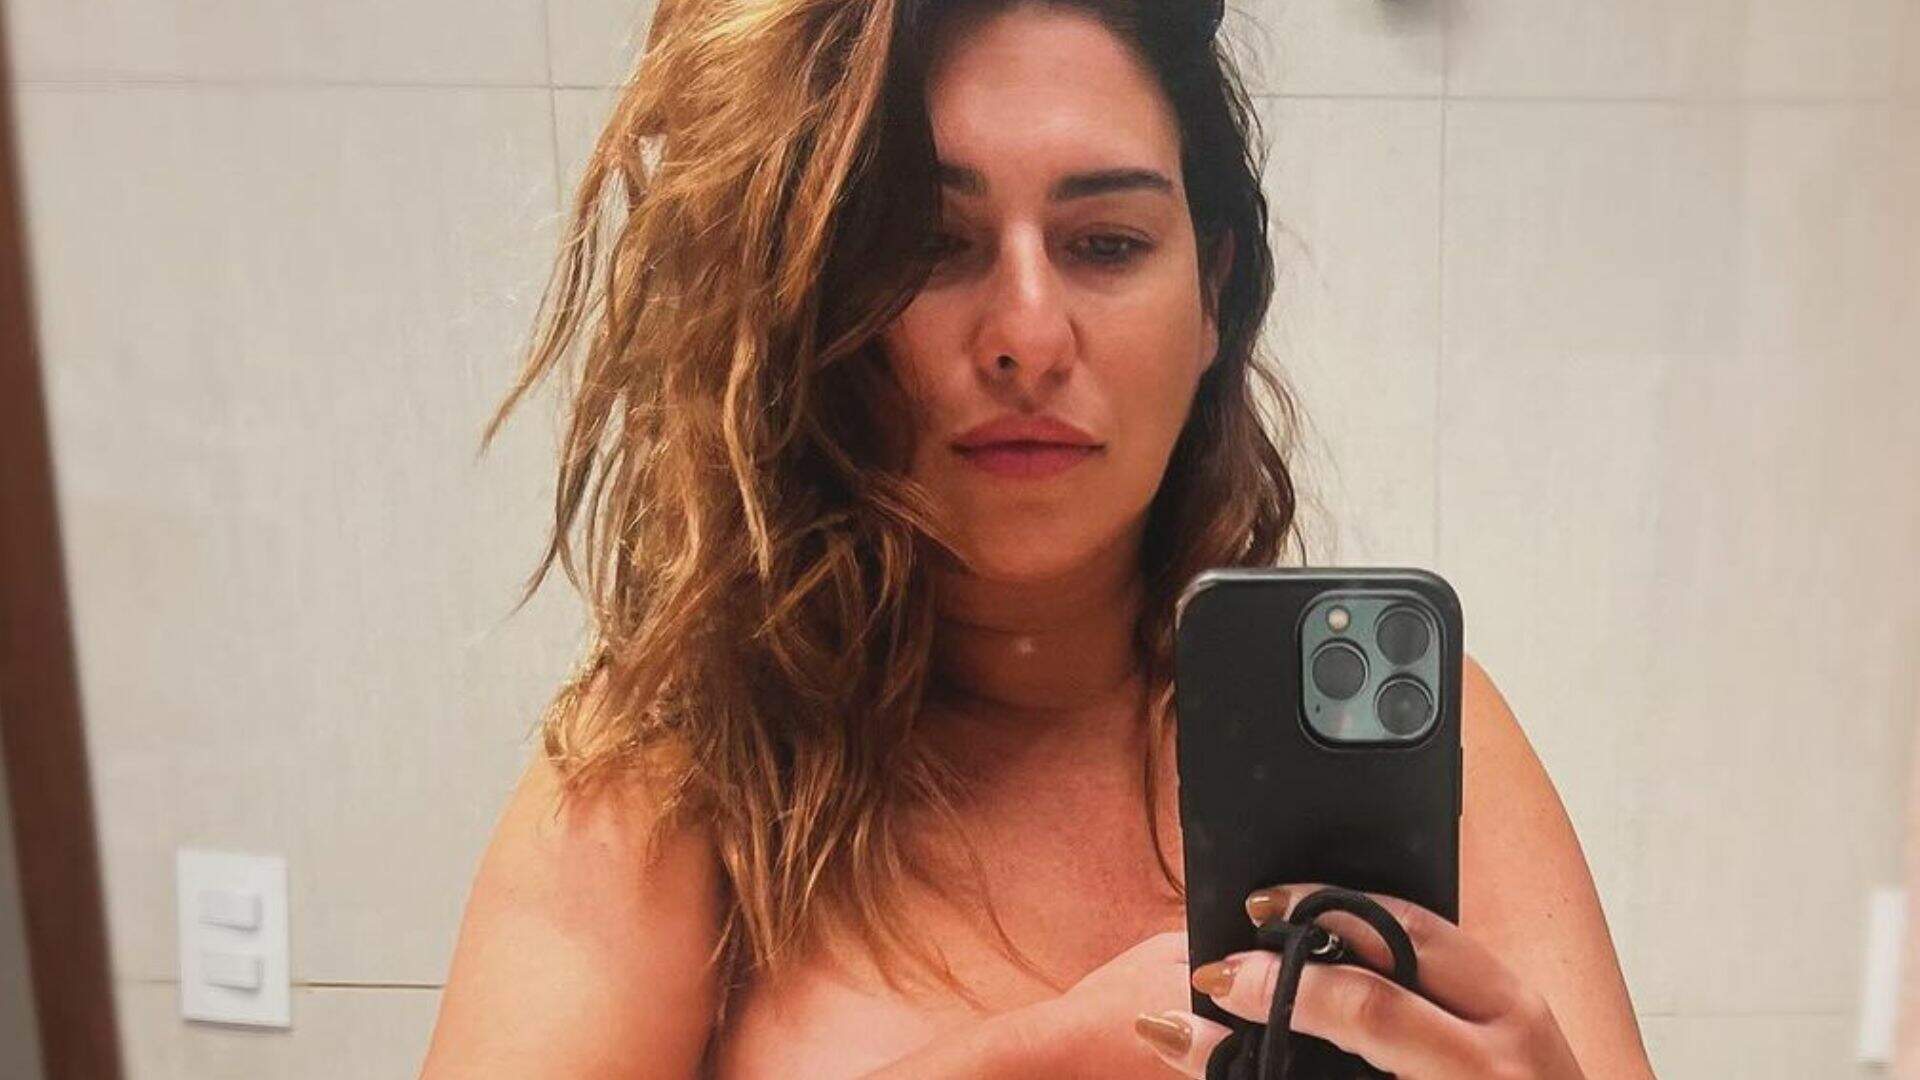 Grávida, Fernanda Paes Leme surge nua e mostra o barrigão em selfie no espelho